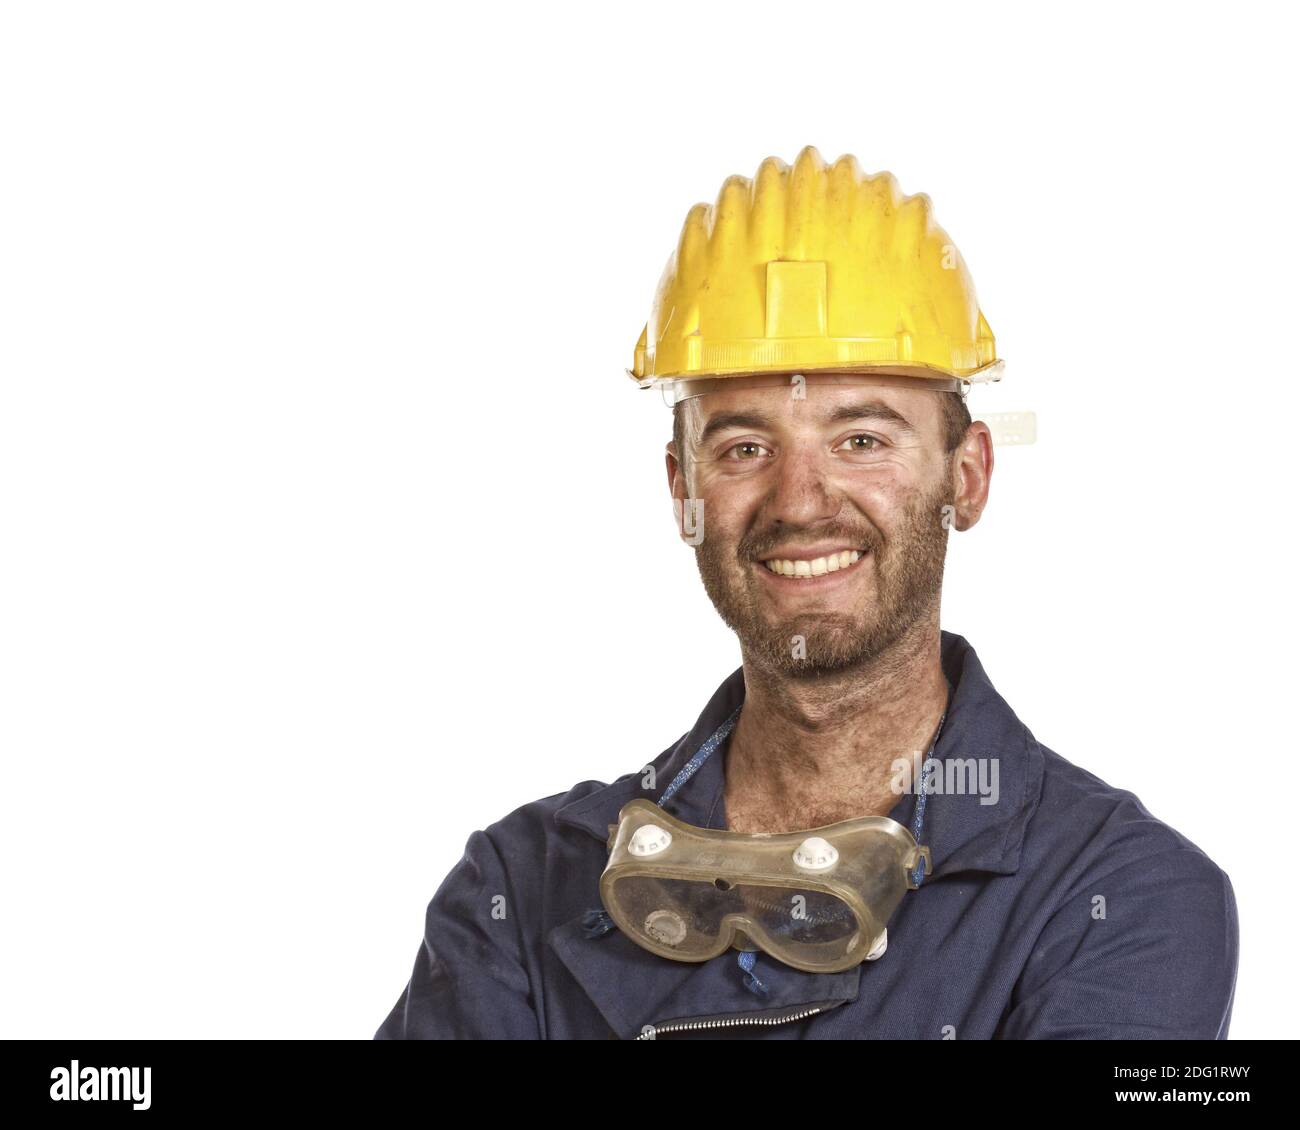 Young labourer portrait Stock Photo